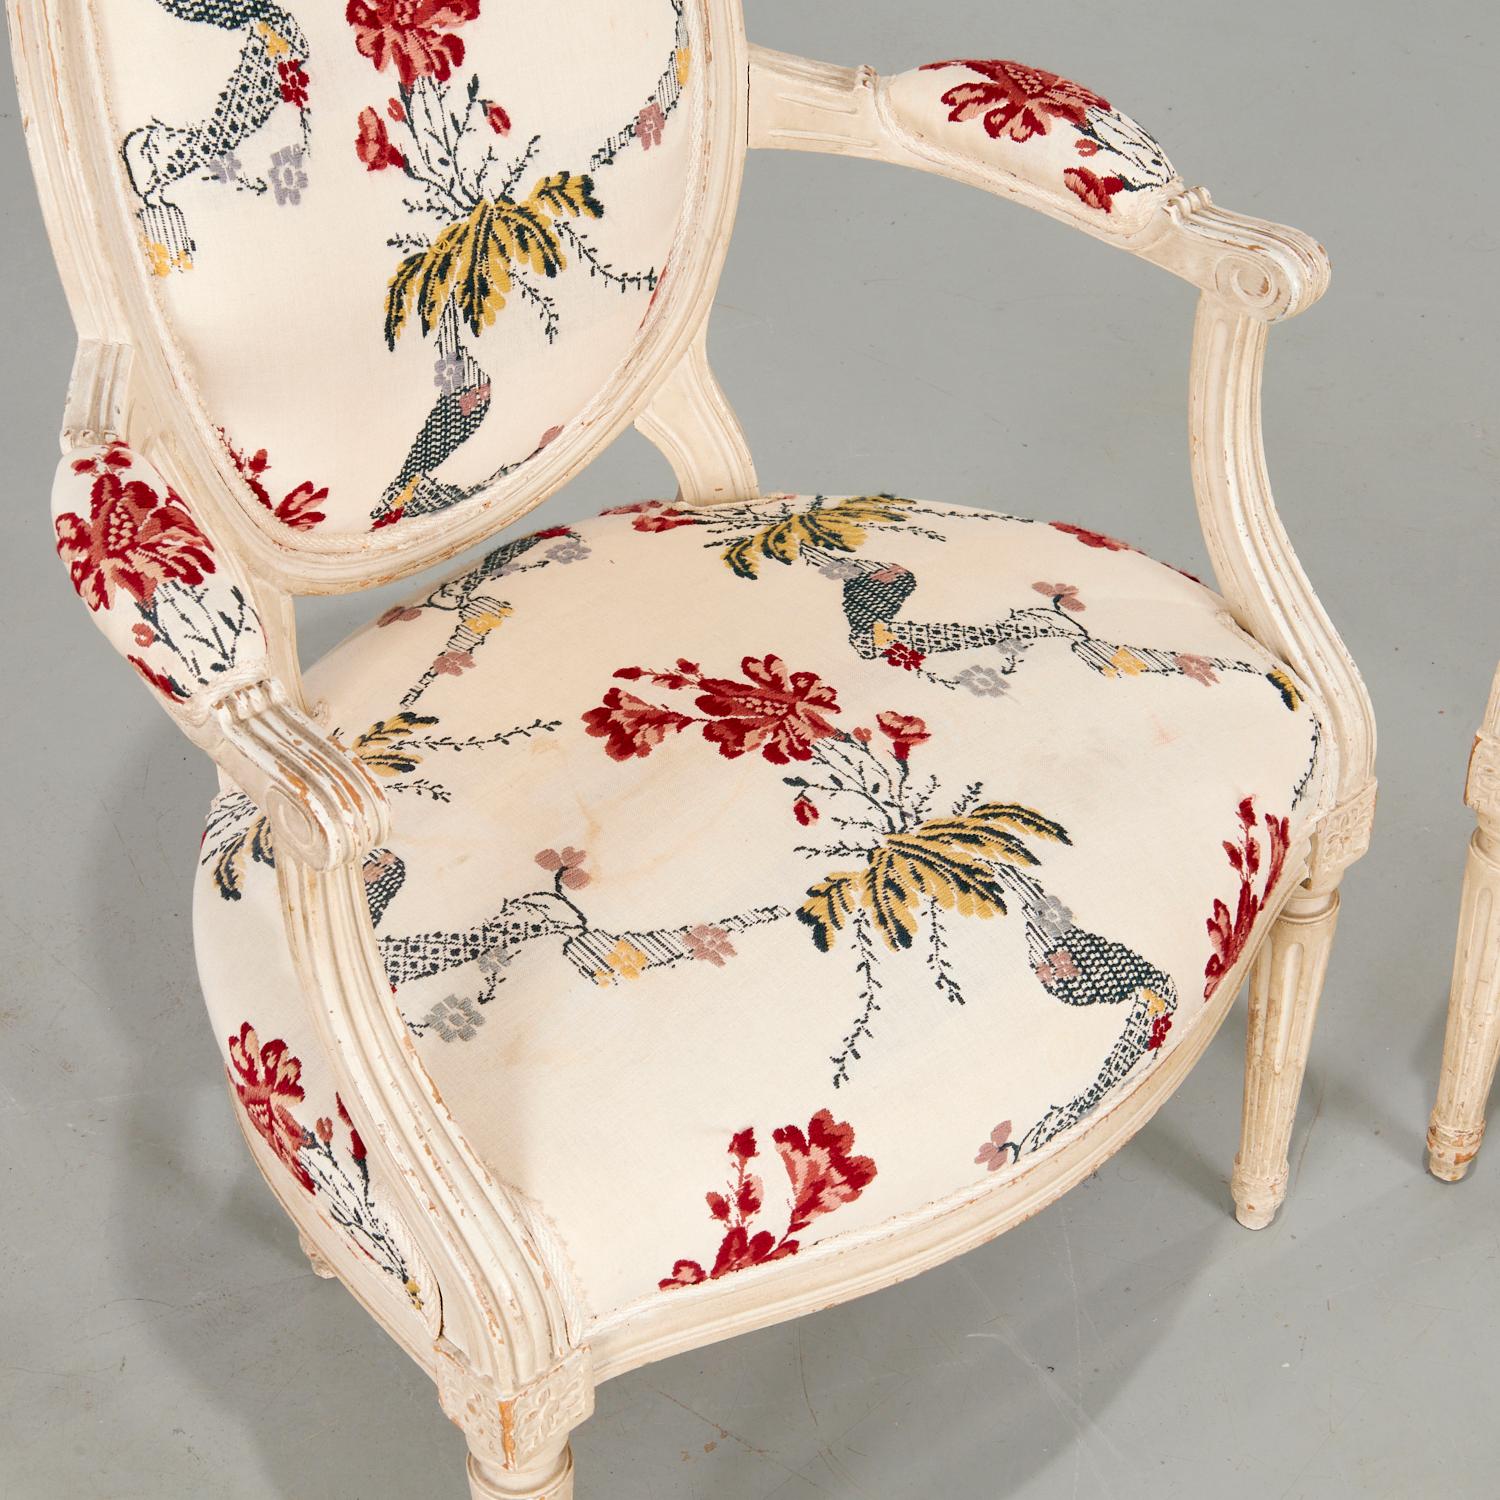 Ein Paar bemalte Fauteuils im Stil Louis XVI aus dem 19. Jahrhundert mit floralen Stickereien aus dem 20.  Polsterung von Sitz, Rückenlehne und Armlehnen. Die Rückenlehne des Stuhles ist mit einem komplementären karierten Stoff gepolstert.

Es gibt